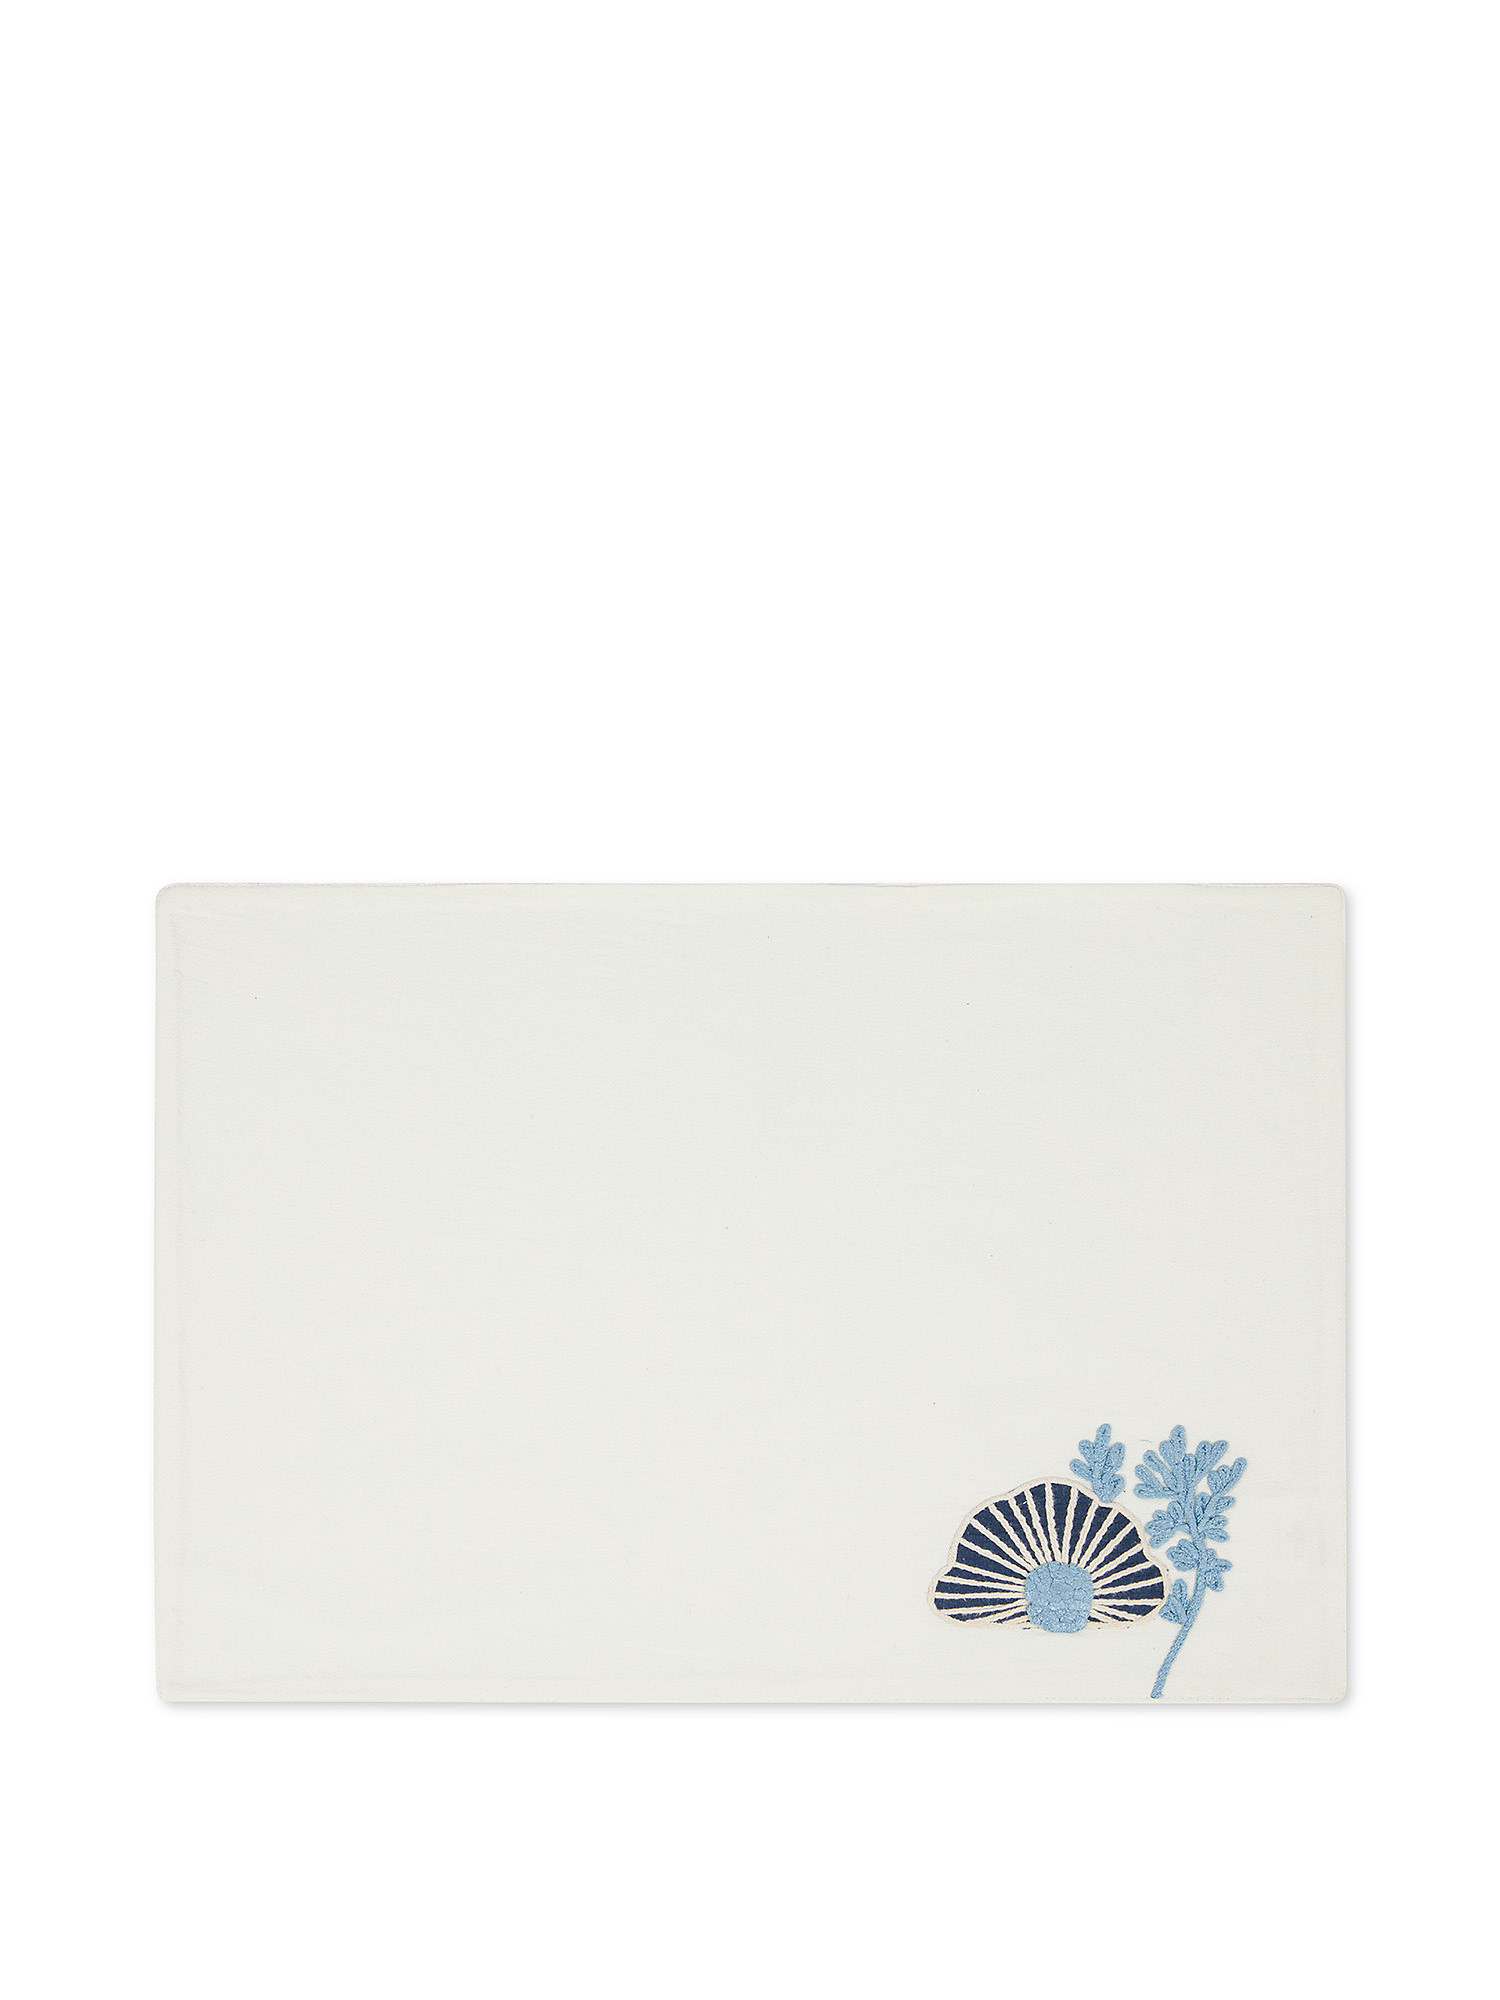 Tovaglietta in puro cotone con ricamo., Bianco/Azzurro, large image number 0